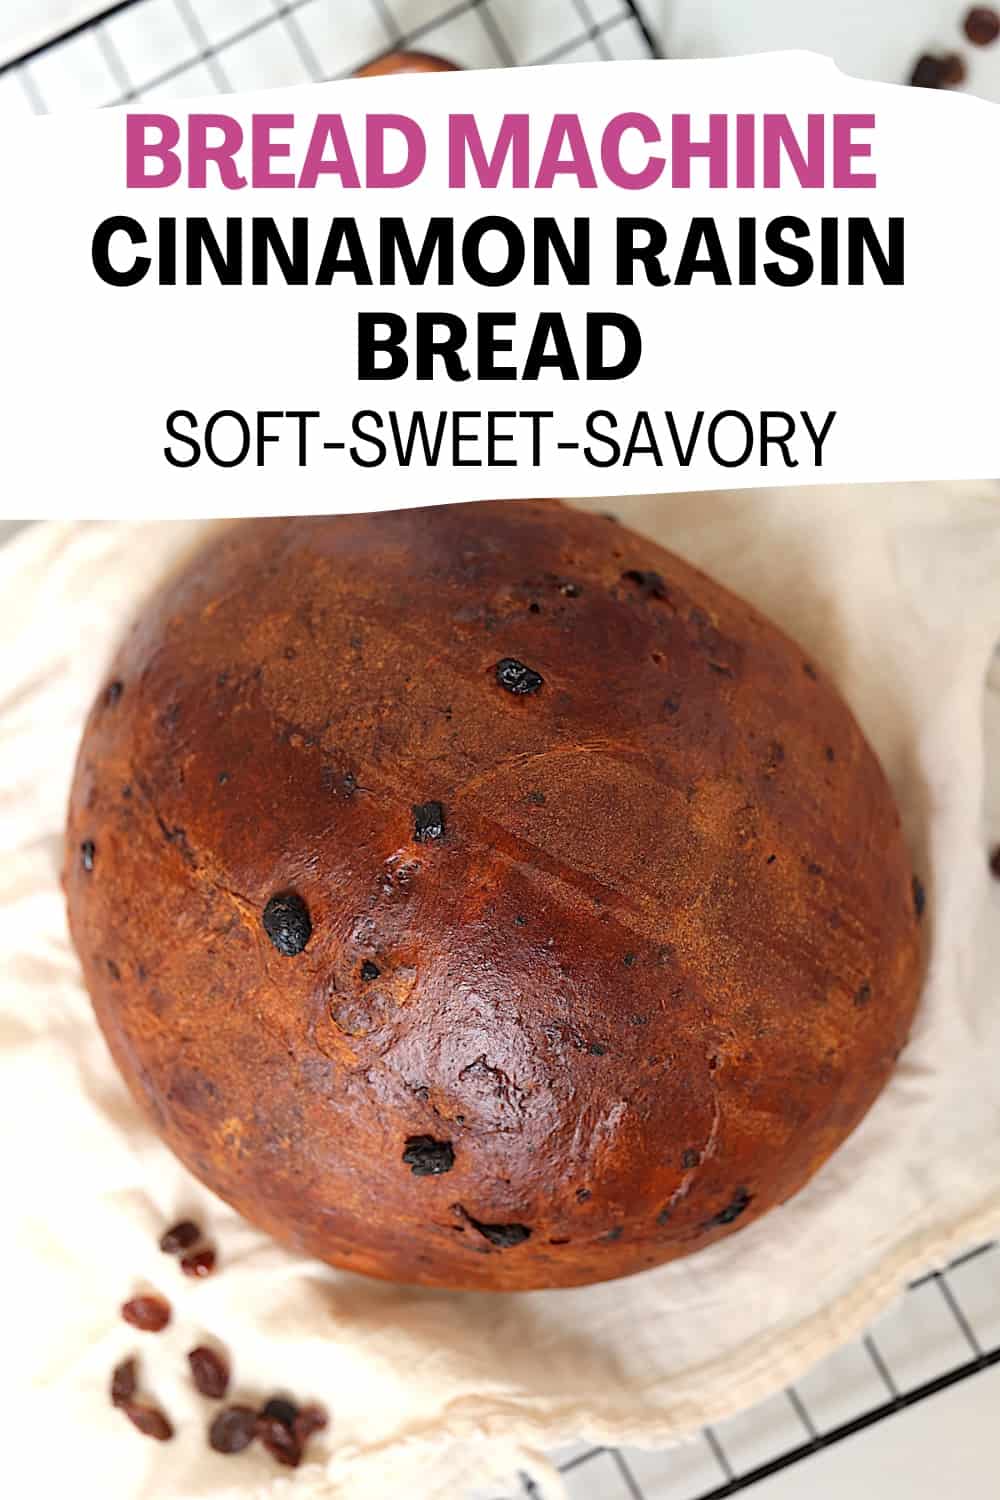 bread maker cinnamon raisin bread pin image